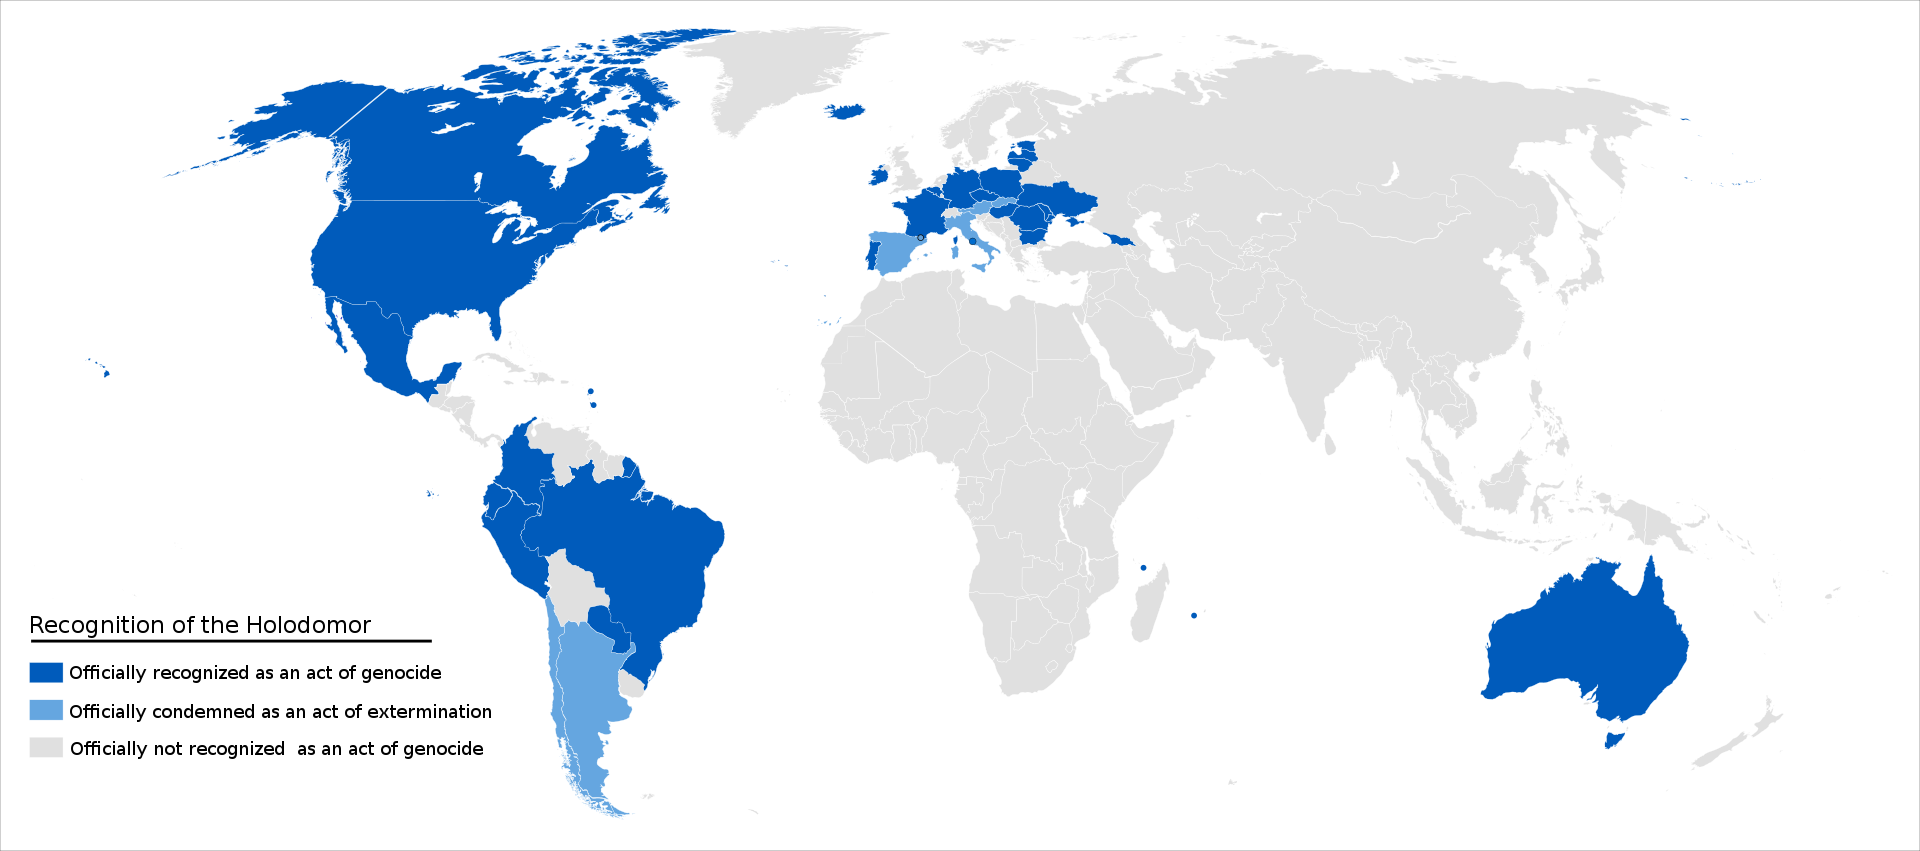 Країни, які визнали Голодомор актом геноциду, позначені темно-синім кольором